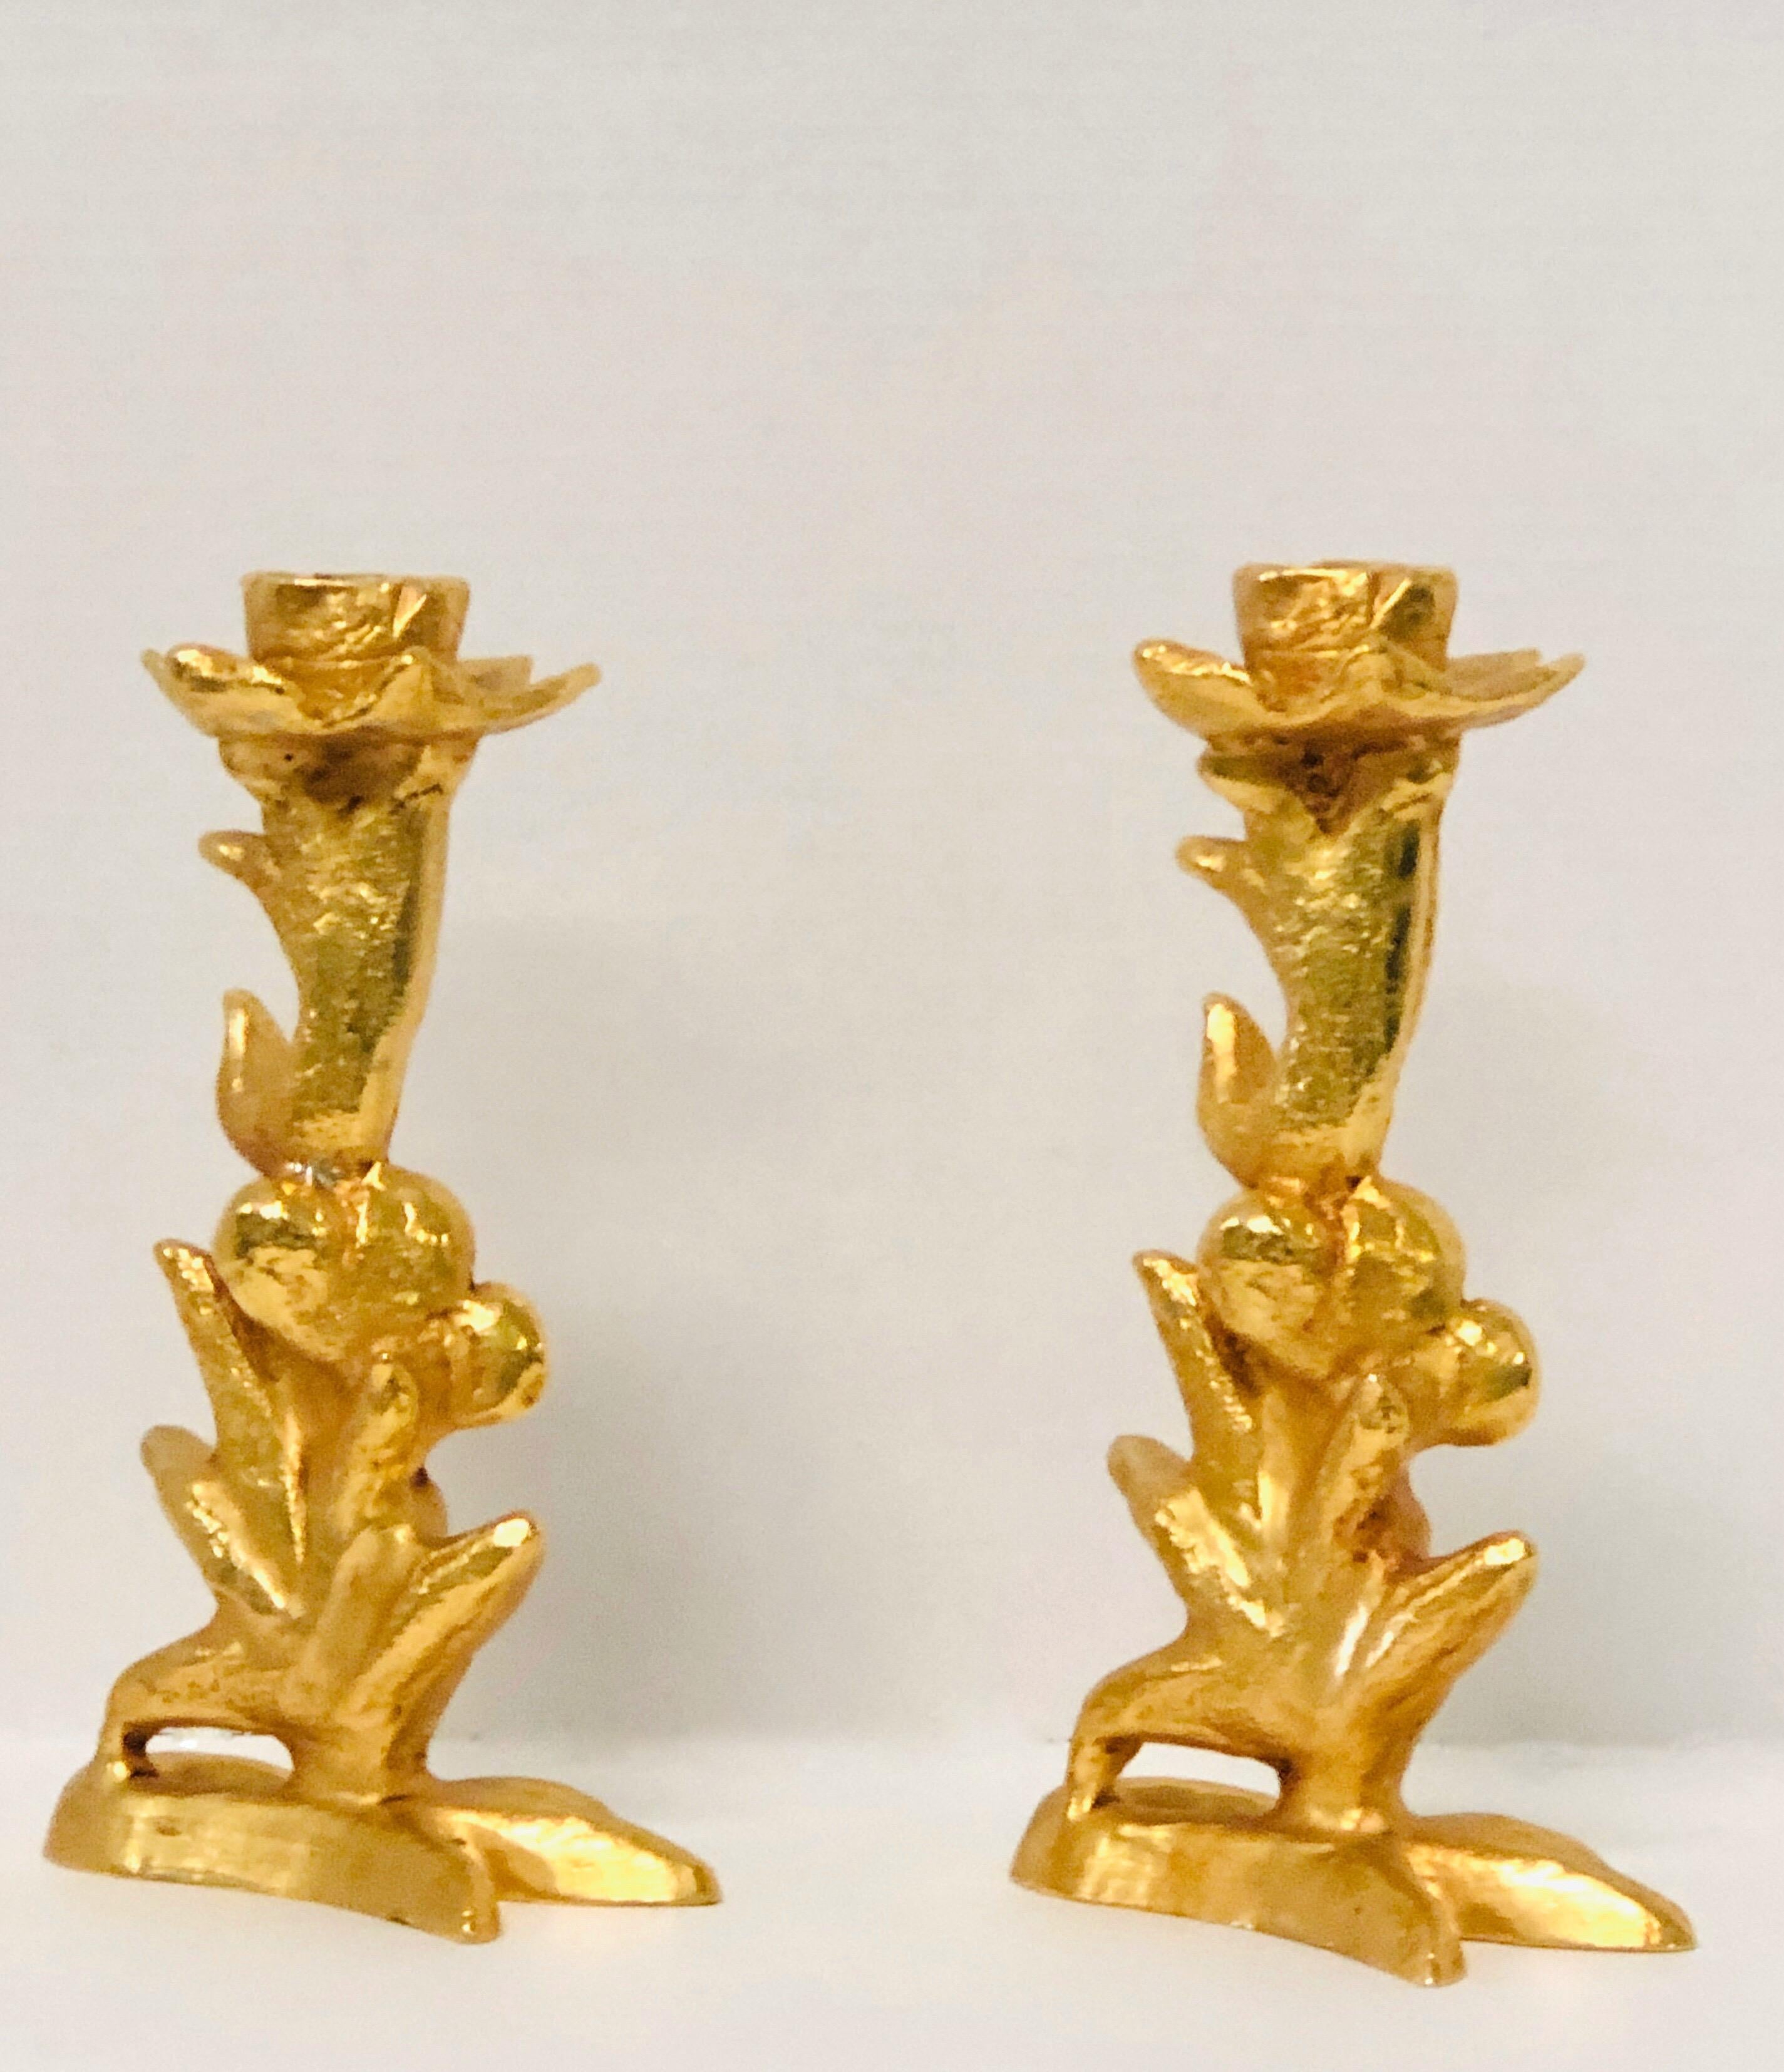 Contemporary Fondica Pair of Gilt Bronze Candlesticks by Mathias